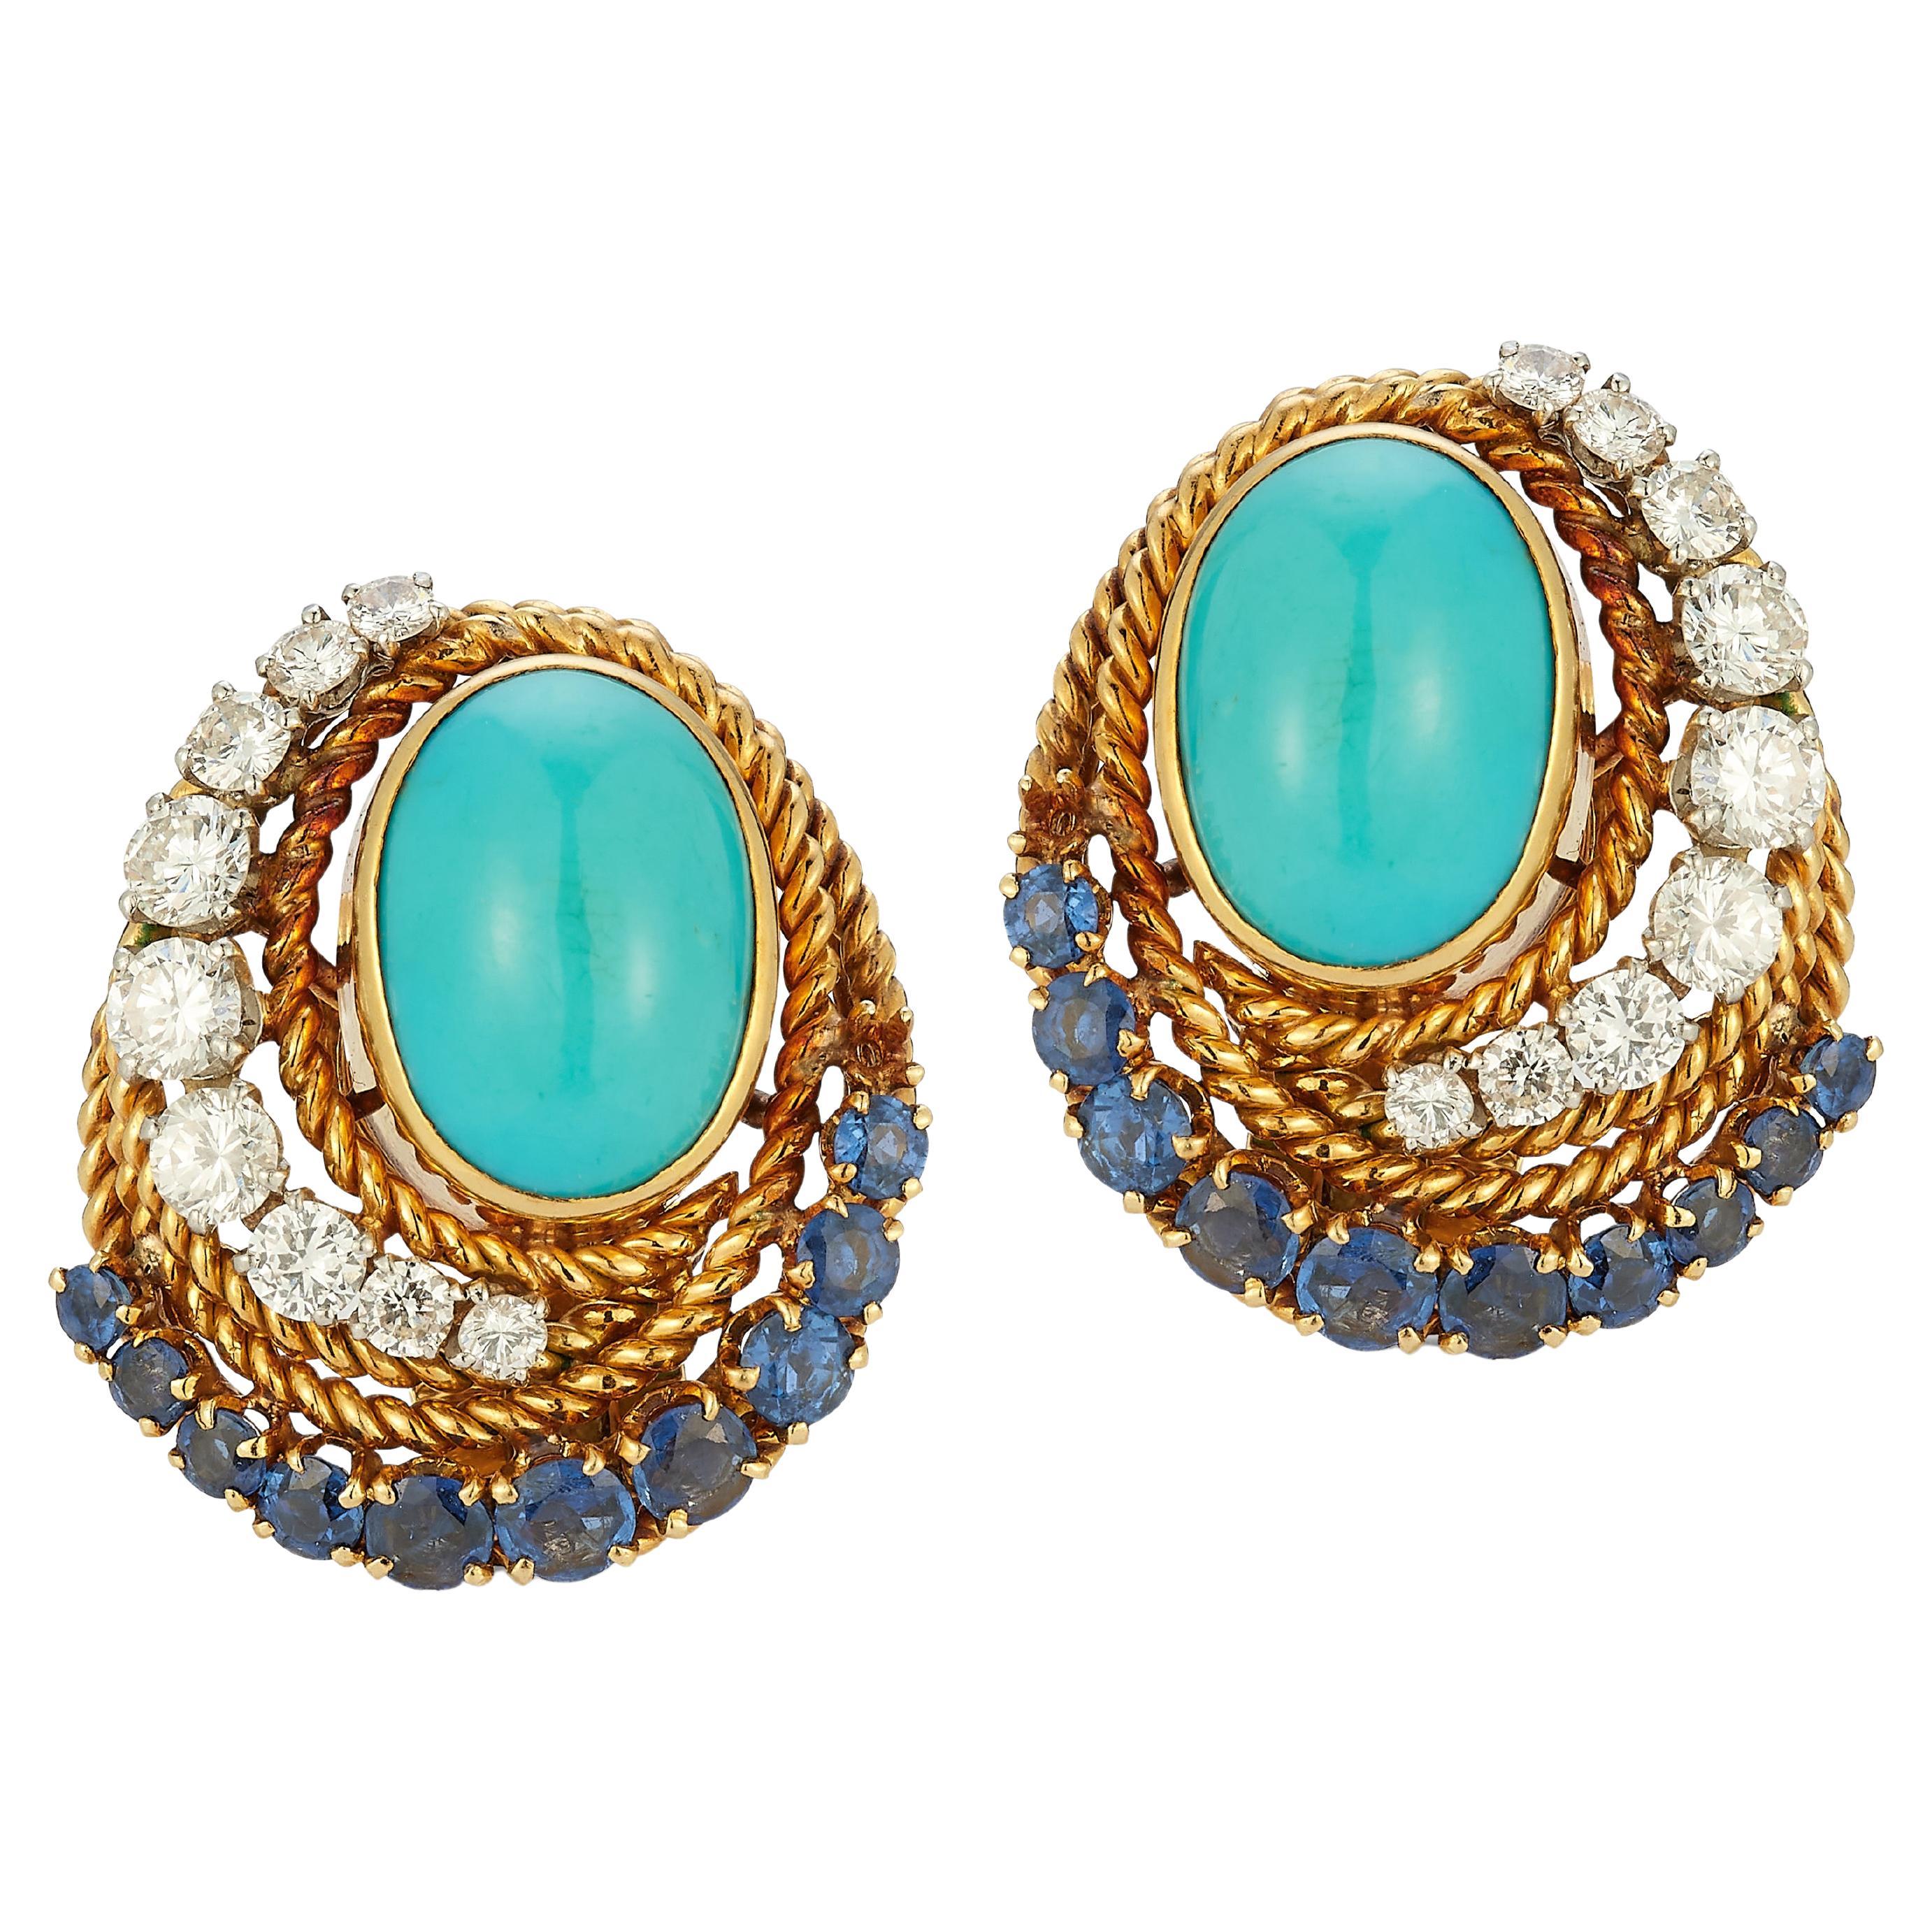 Van Cleef & Arpels Turquoise Sapphire & Diamond Earrings